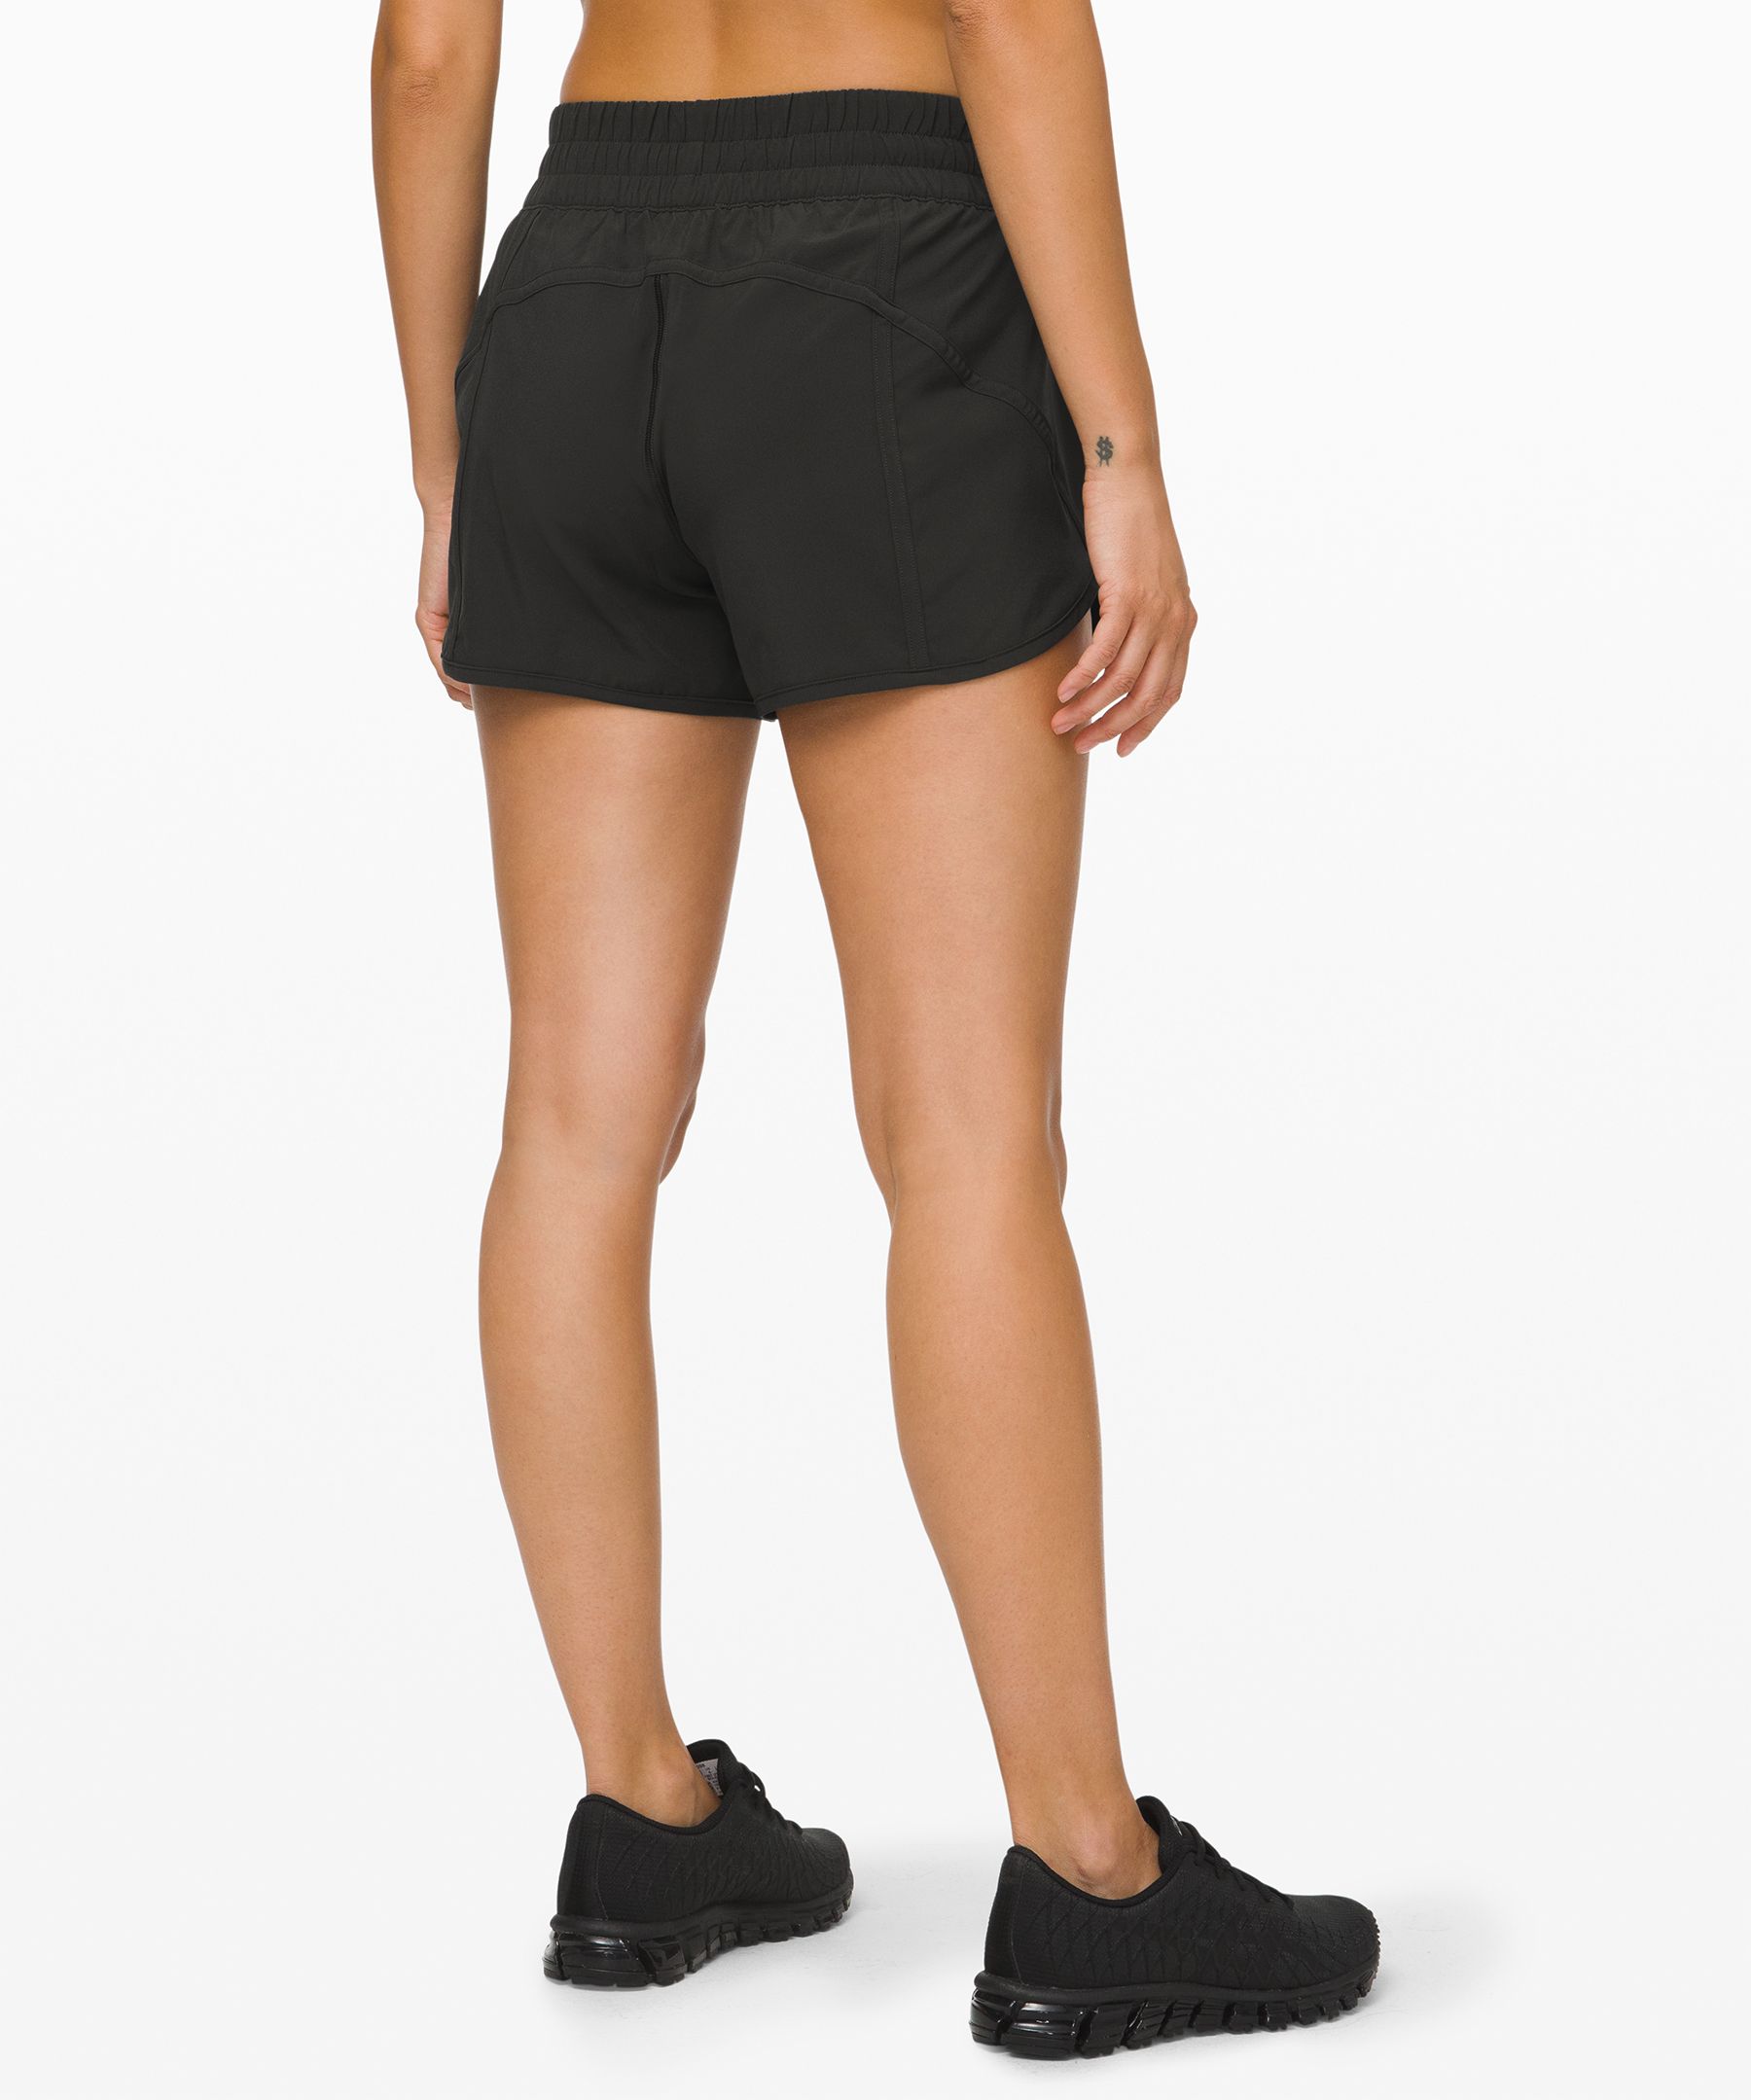 lululemon shorts with zipper pocket